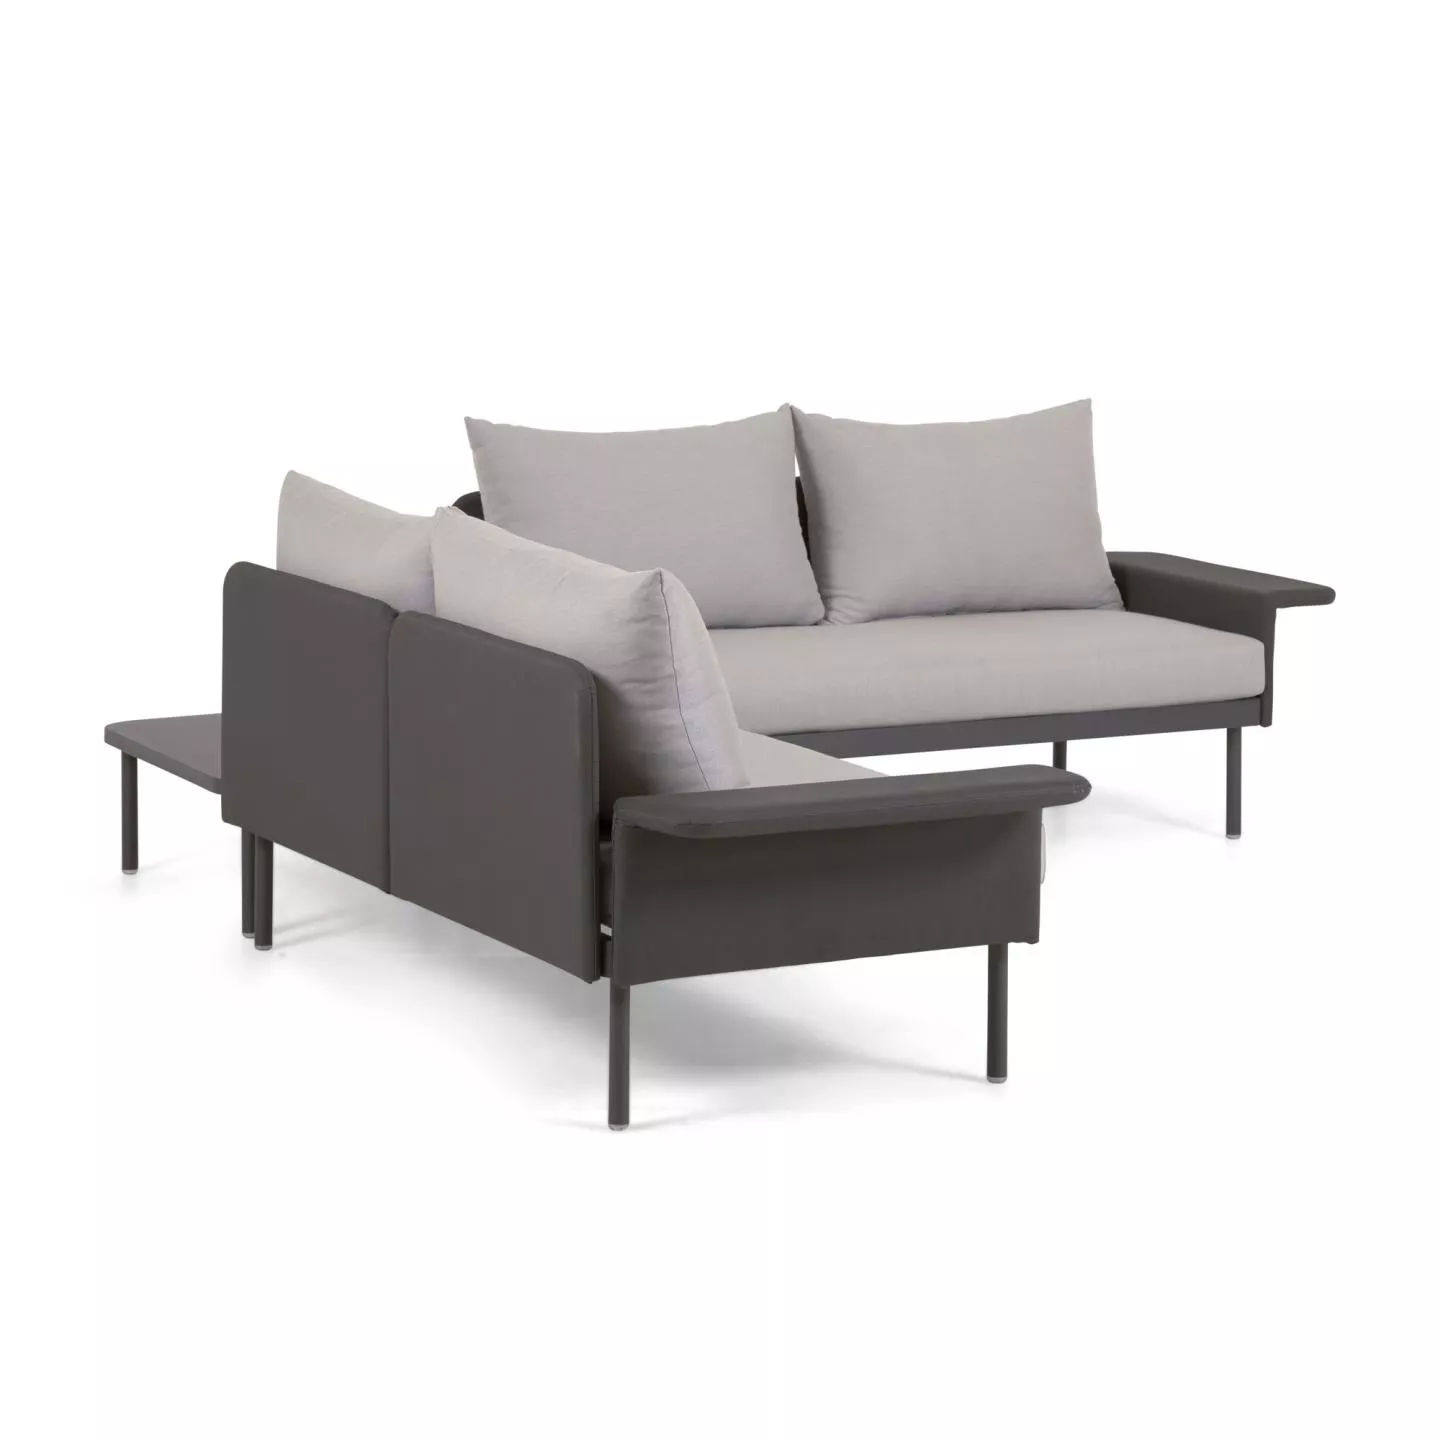 Угловой алюминиевый диван La Forma Zaltana с черной матовой отделкой 164 см